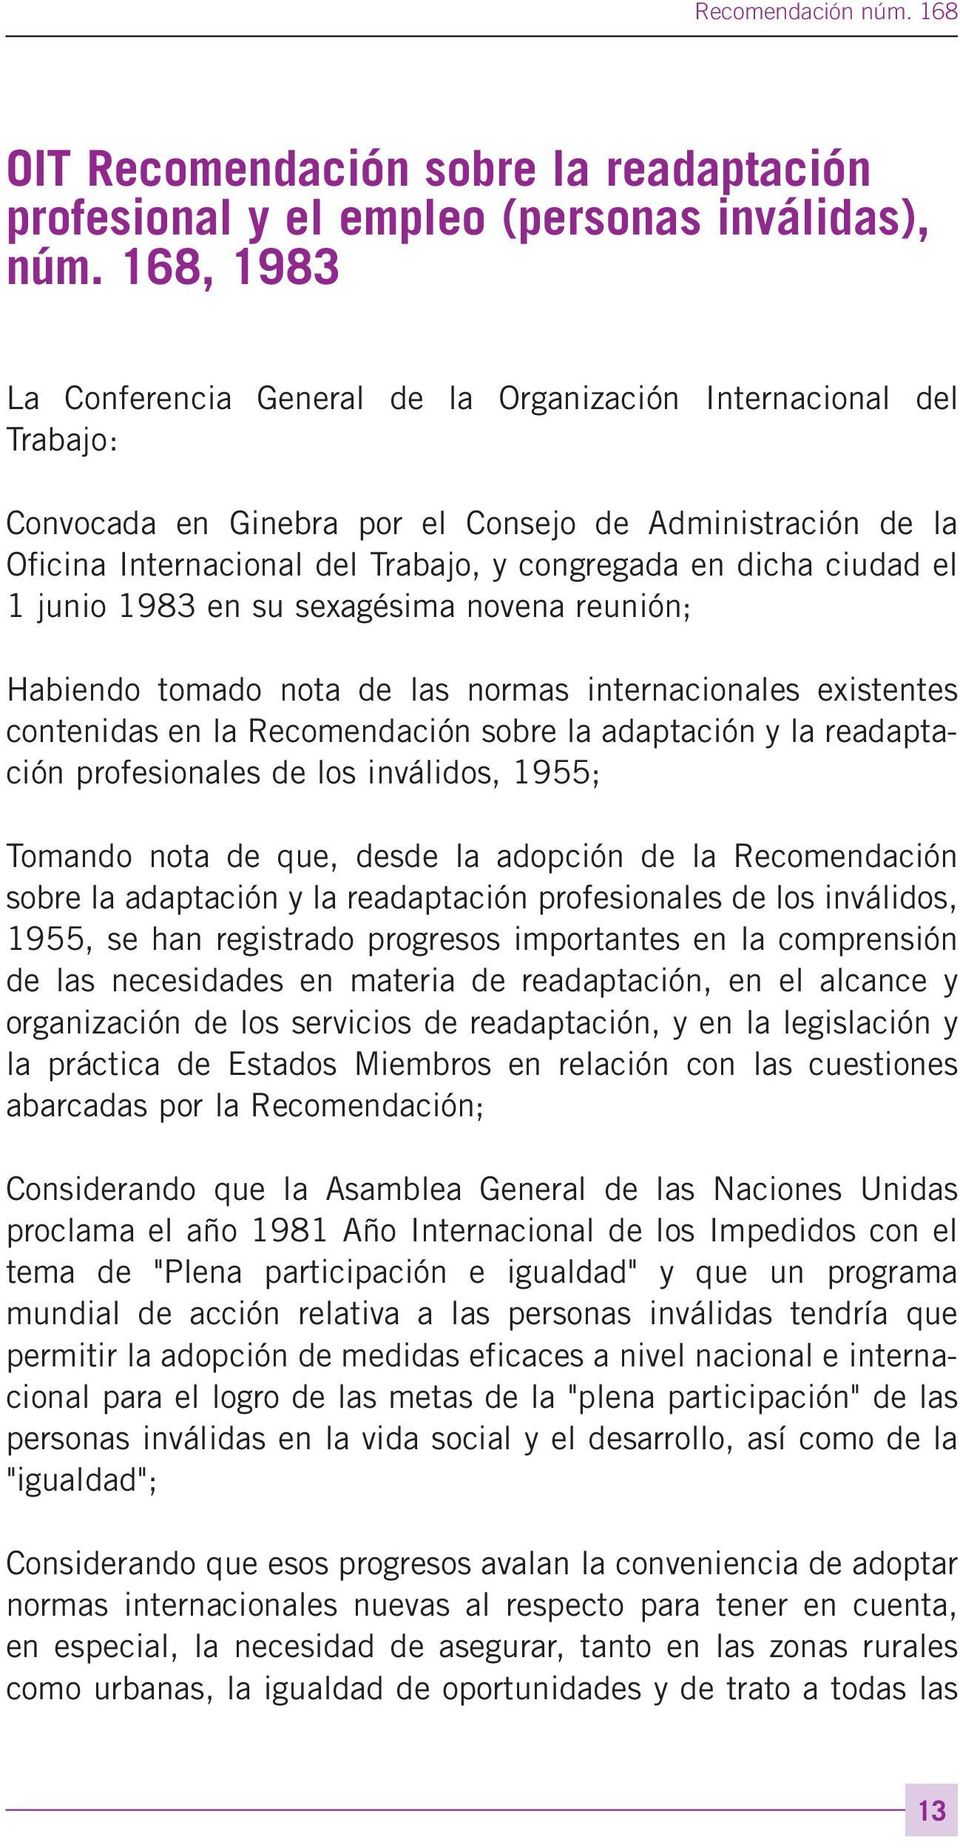 ciudad el 1 junio 1983 en su sexagésima novena reunión; Habiendo tomado nota de las normas internacionales existentes contenidas en la Recomendación sobre la adaptación y la readaptación